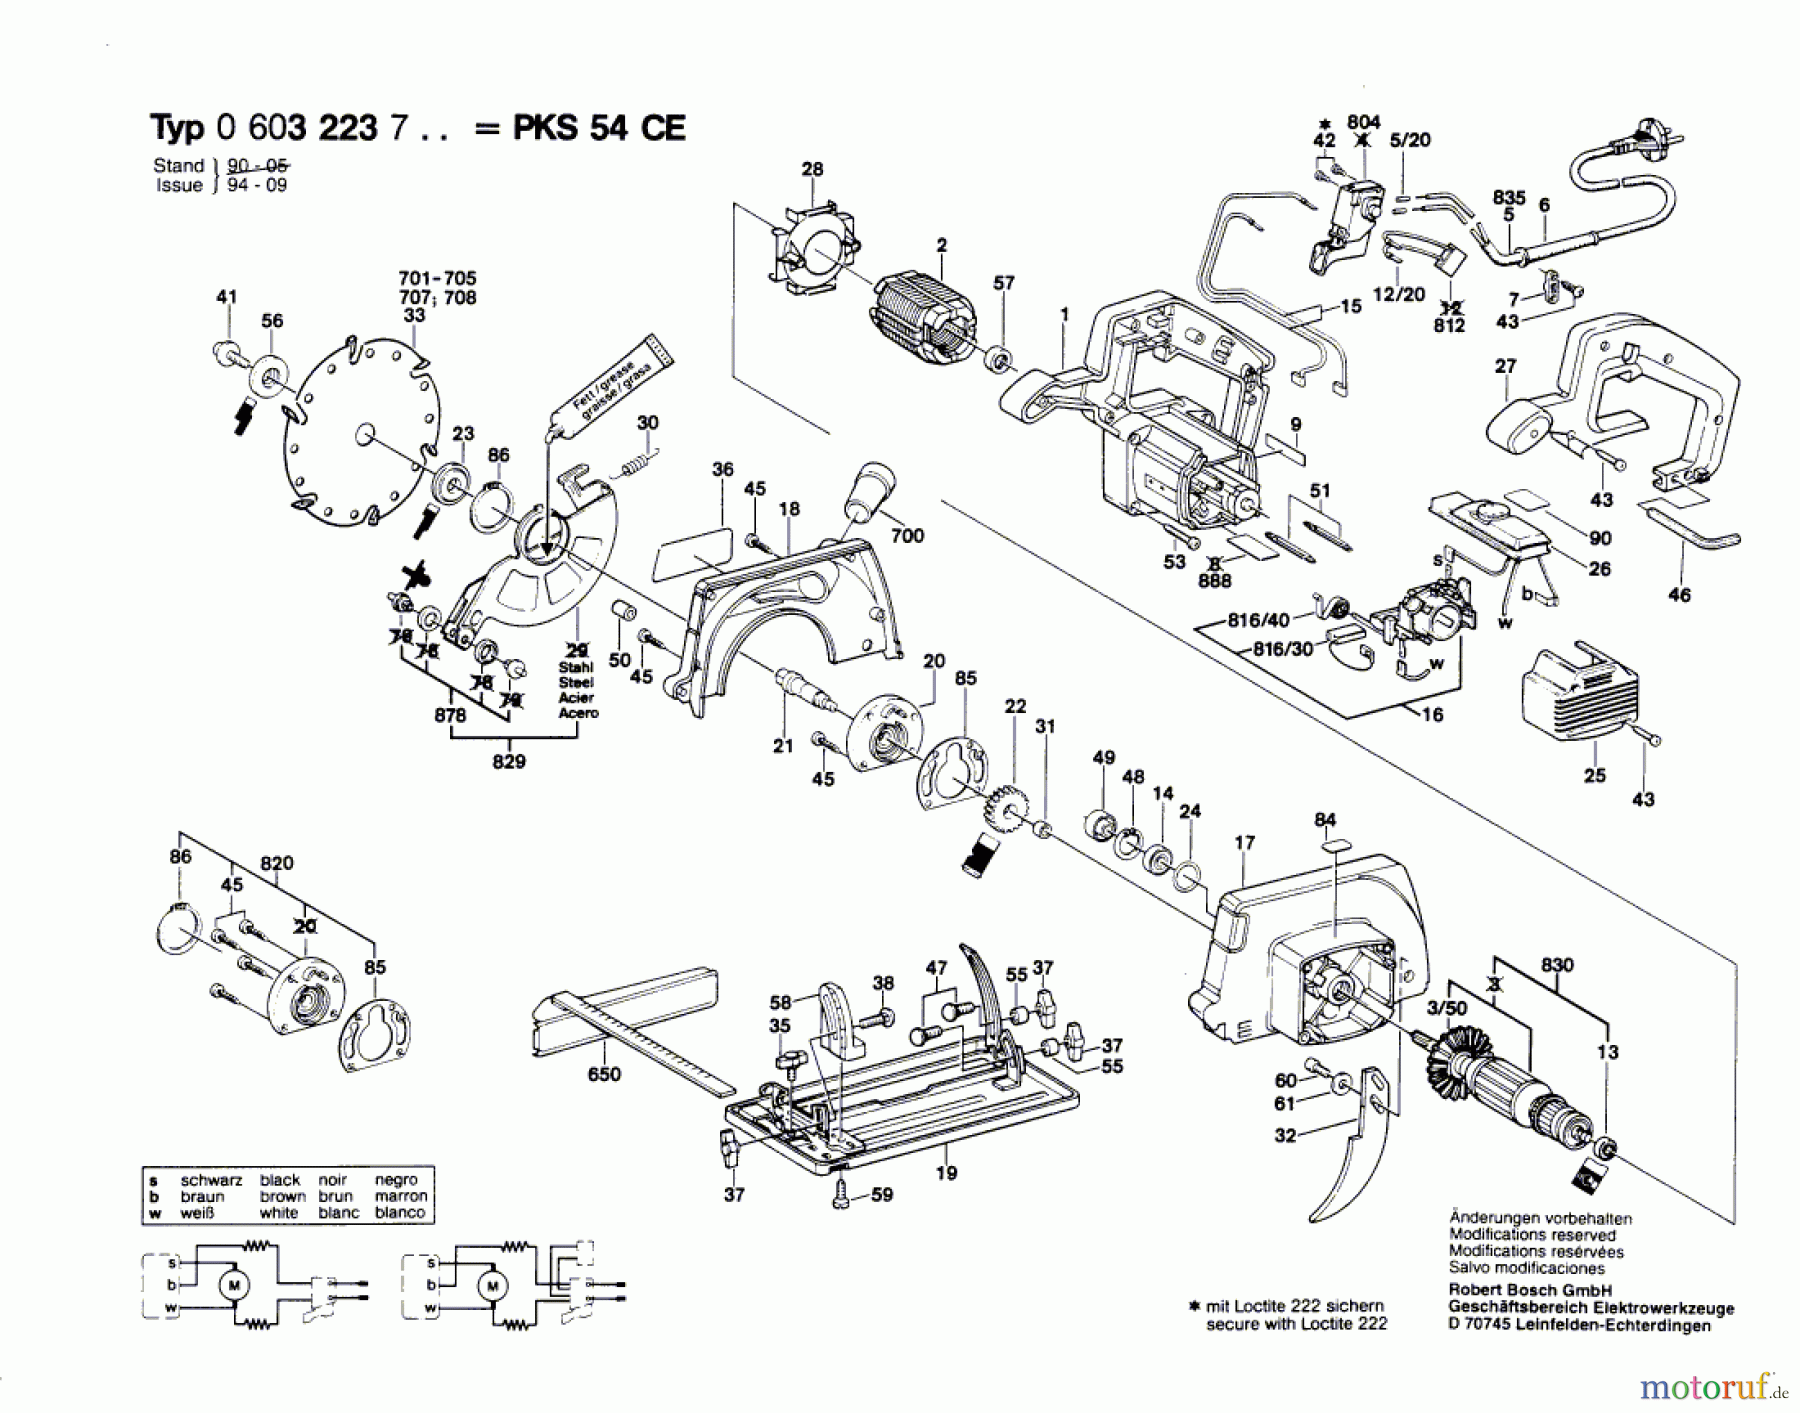  Bosch Werkzeug Handkreissäge PKS 54 CE Seite 1